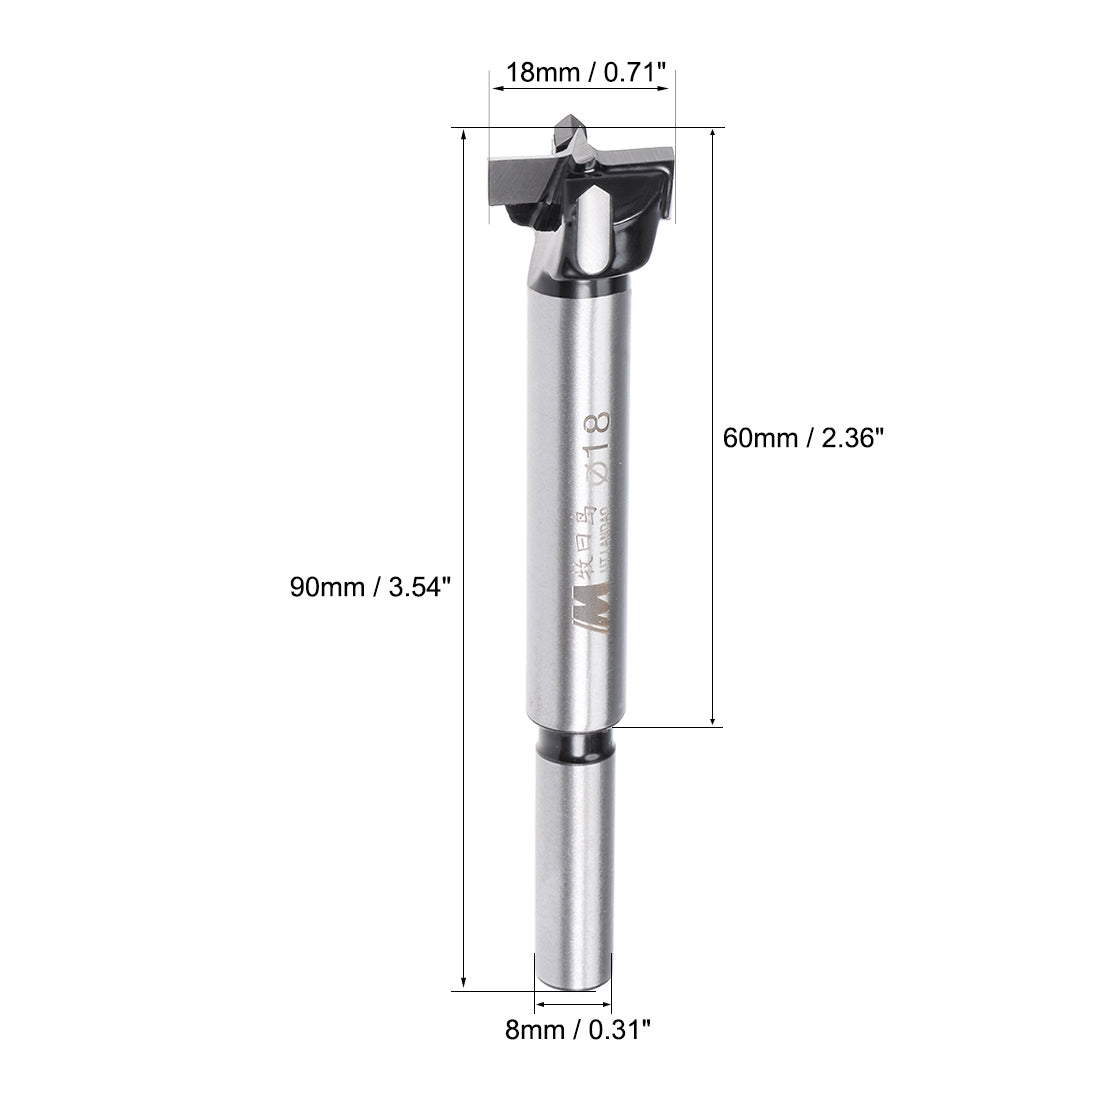 uxcell Uxcell Forstner Drill Bits, 18mm Diameter, 8mm x 30mm Shank